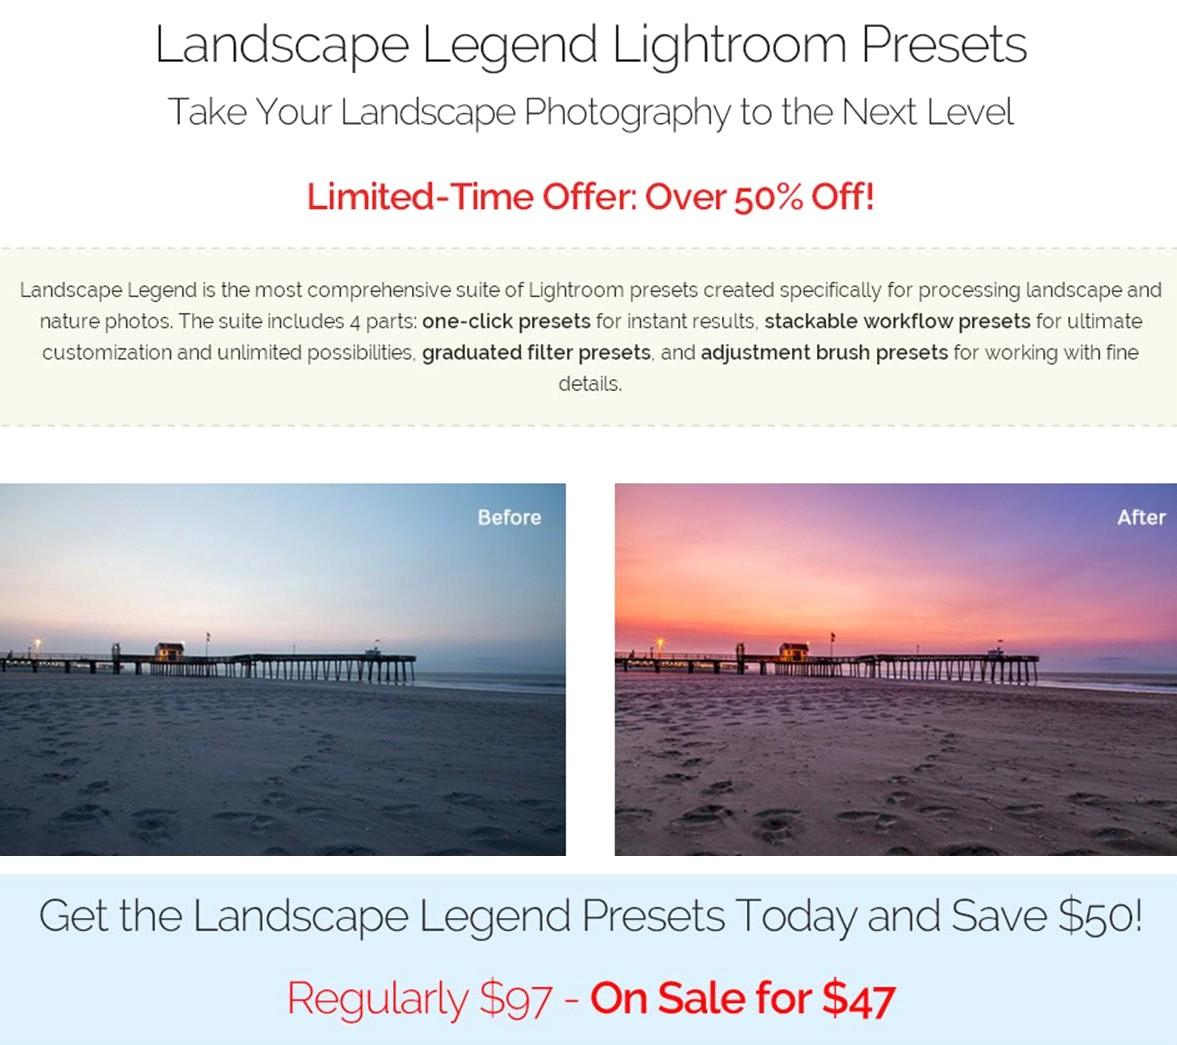 landscape-legend-lightroom-presets-for-awesome-nature-photography2